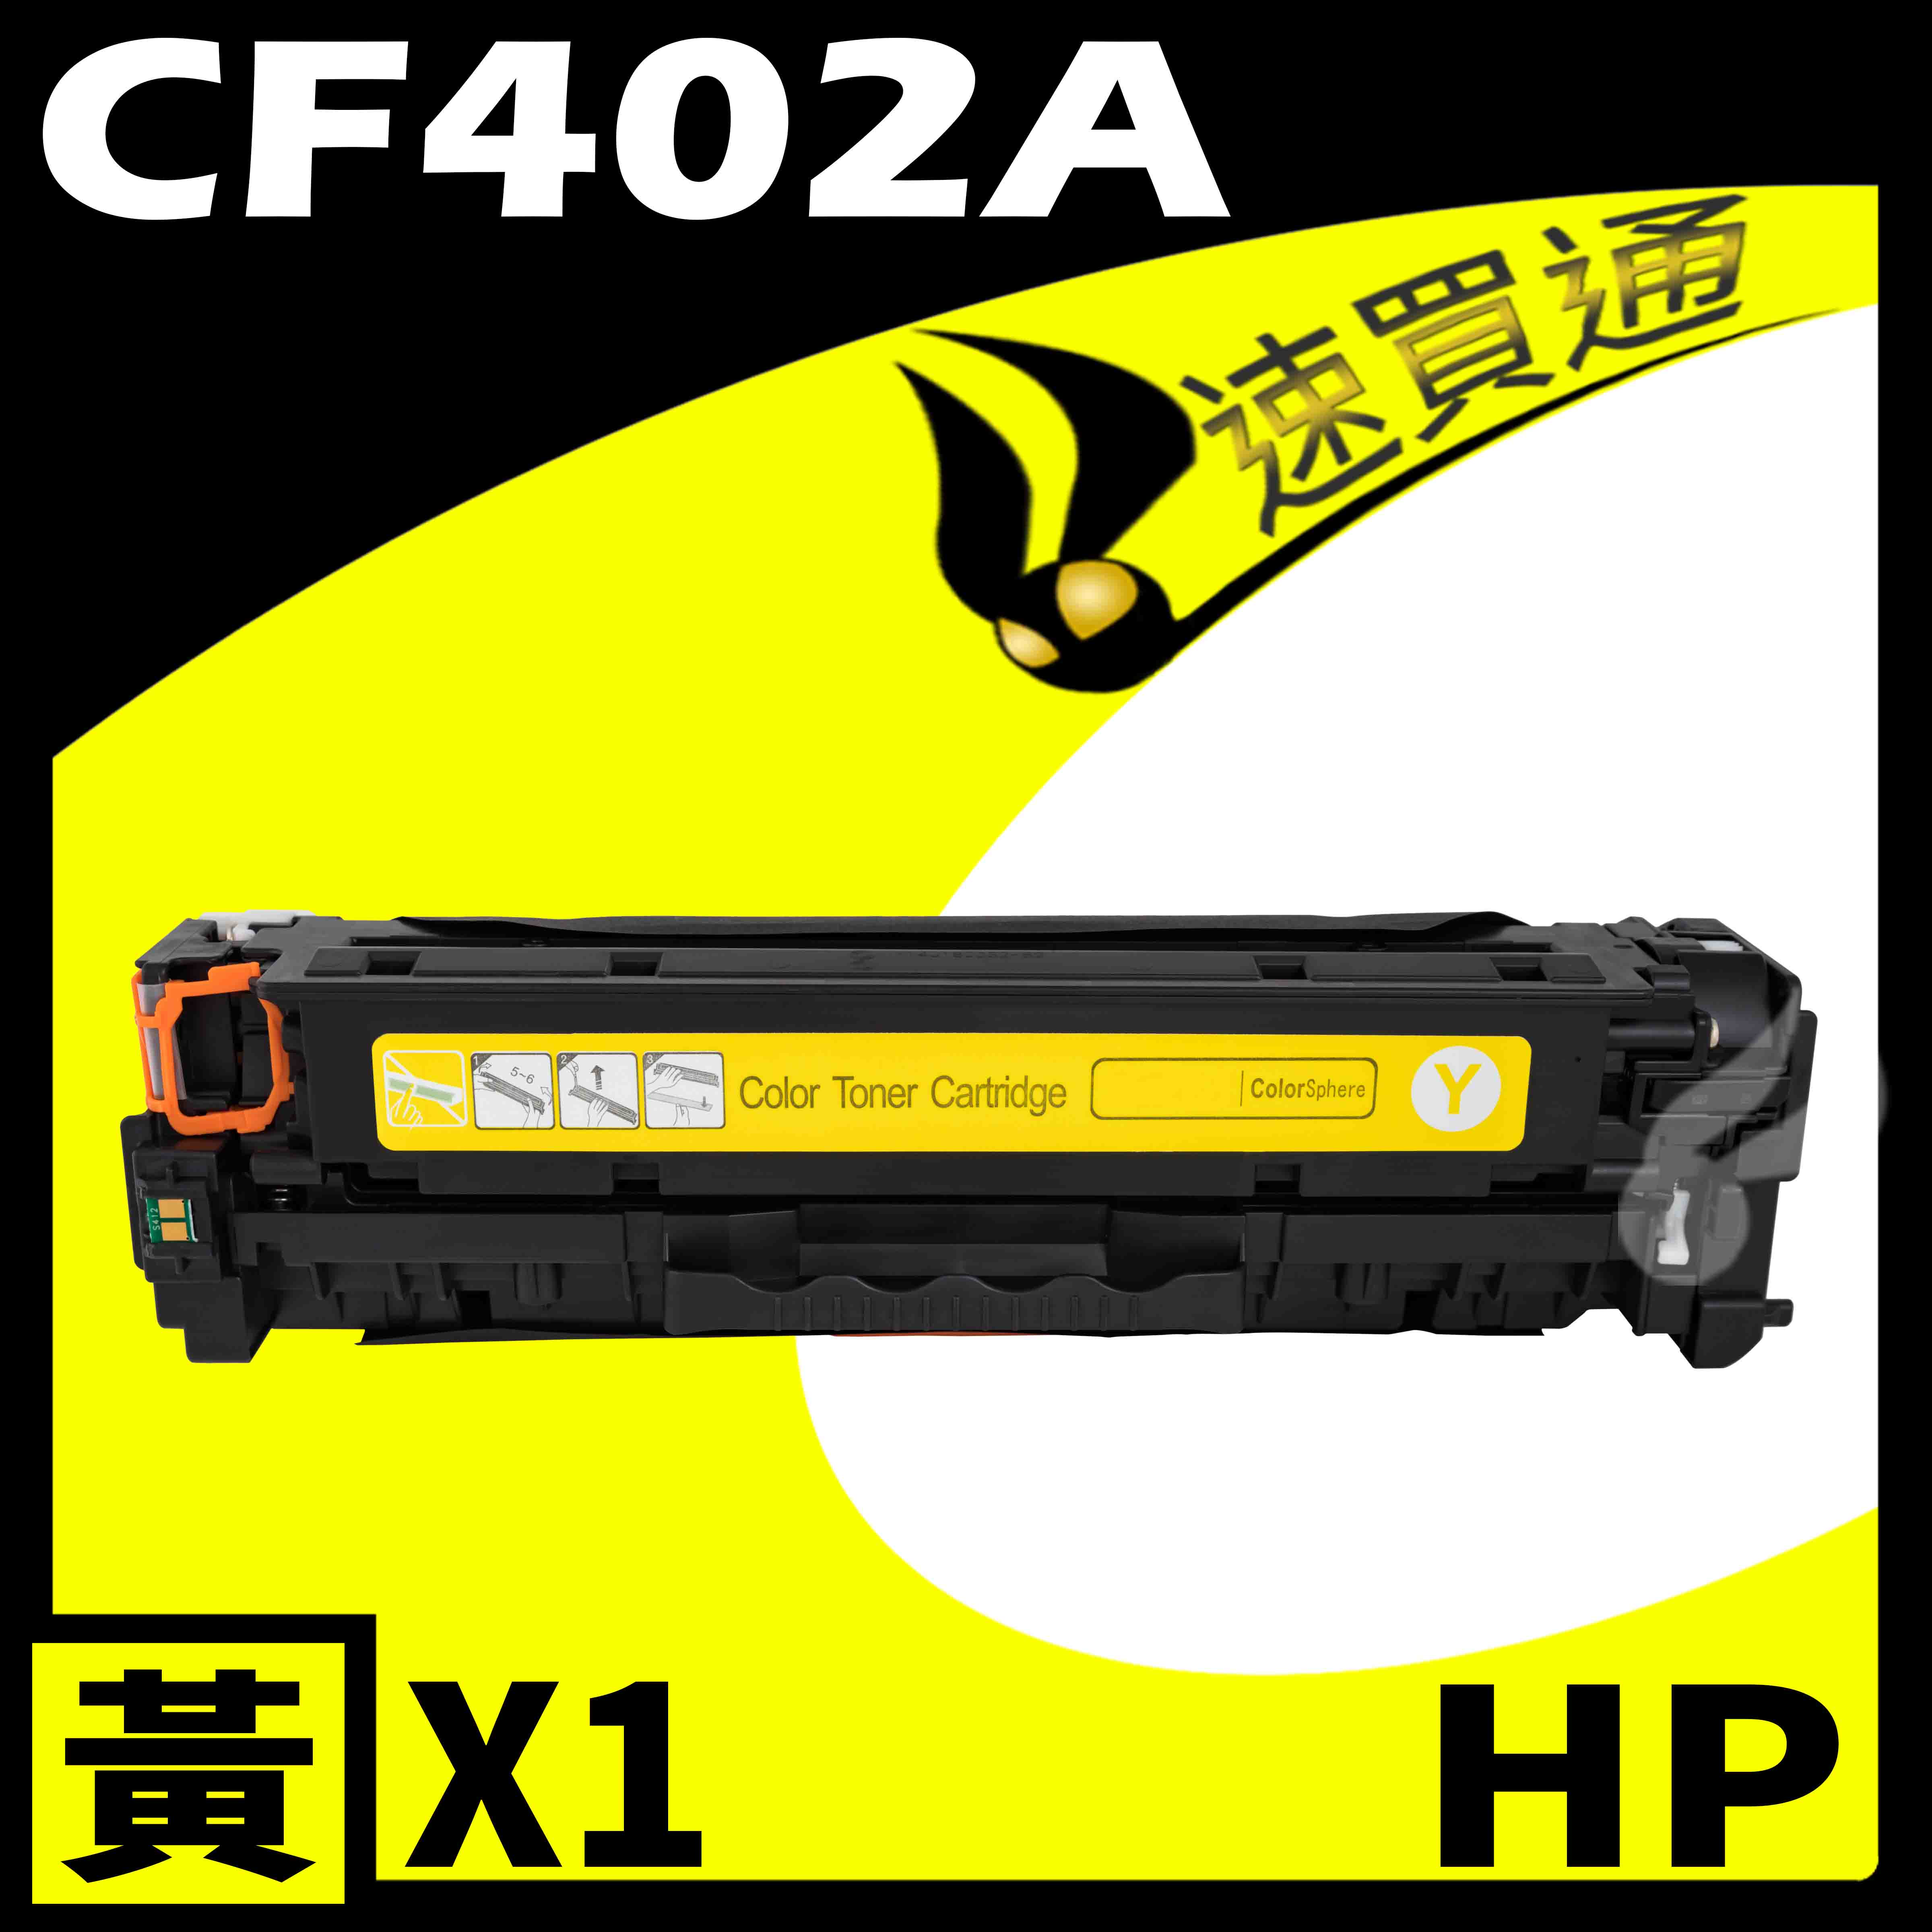 【速買通】HP CF402A 黃 相容彩色碳粉匣